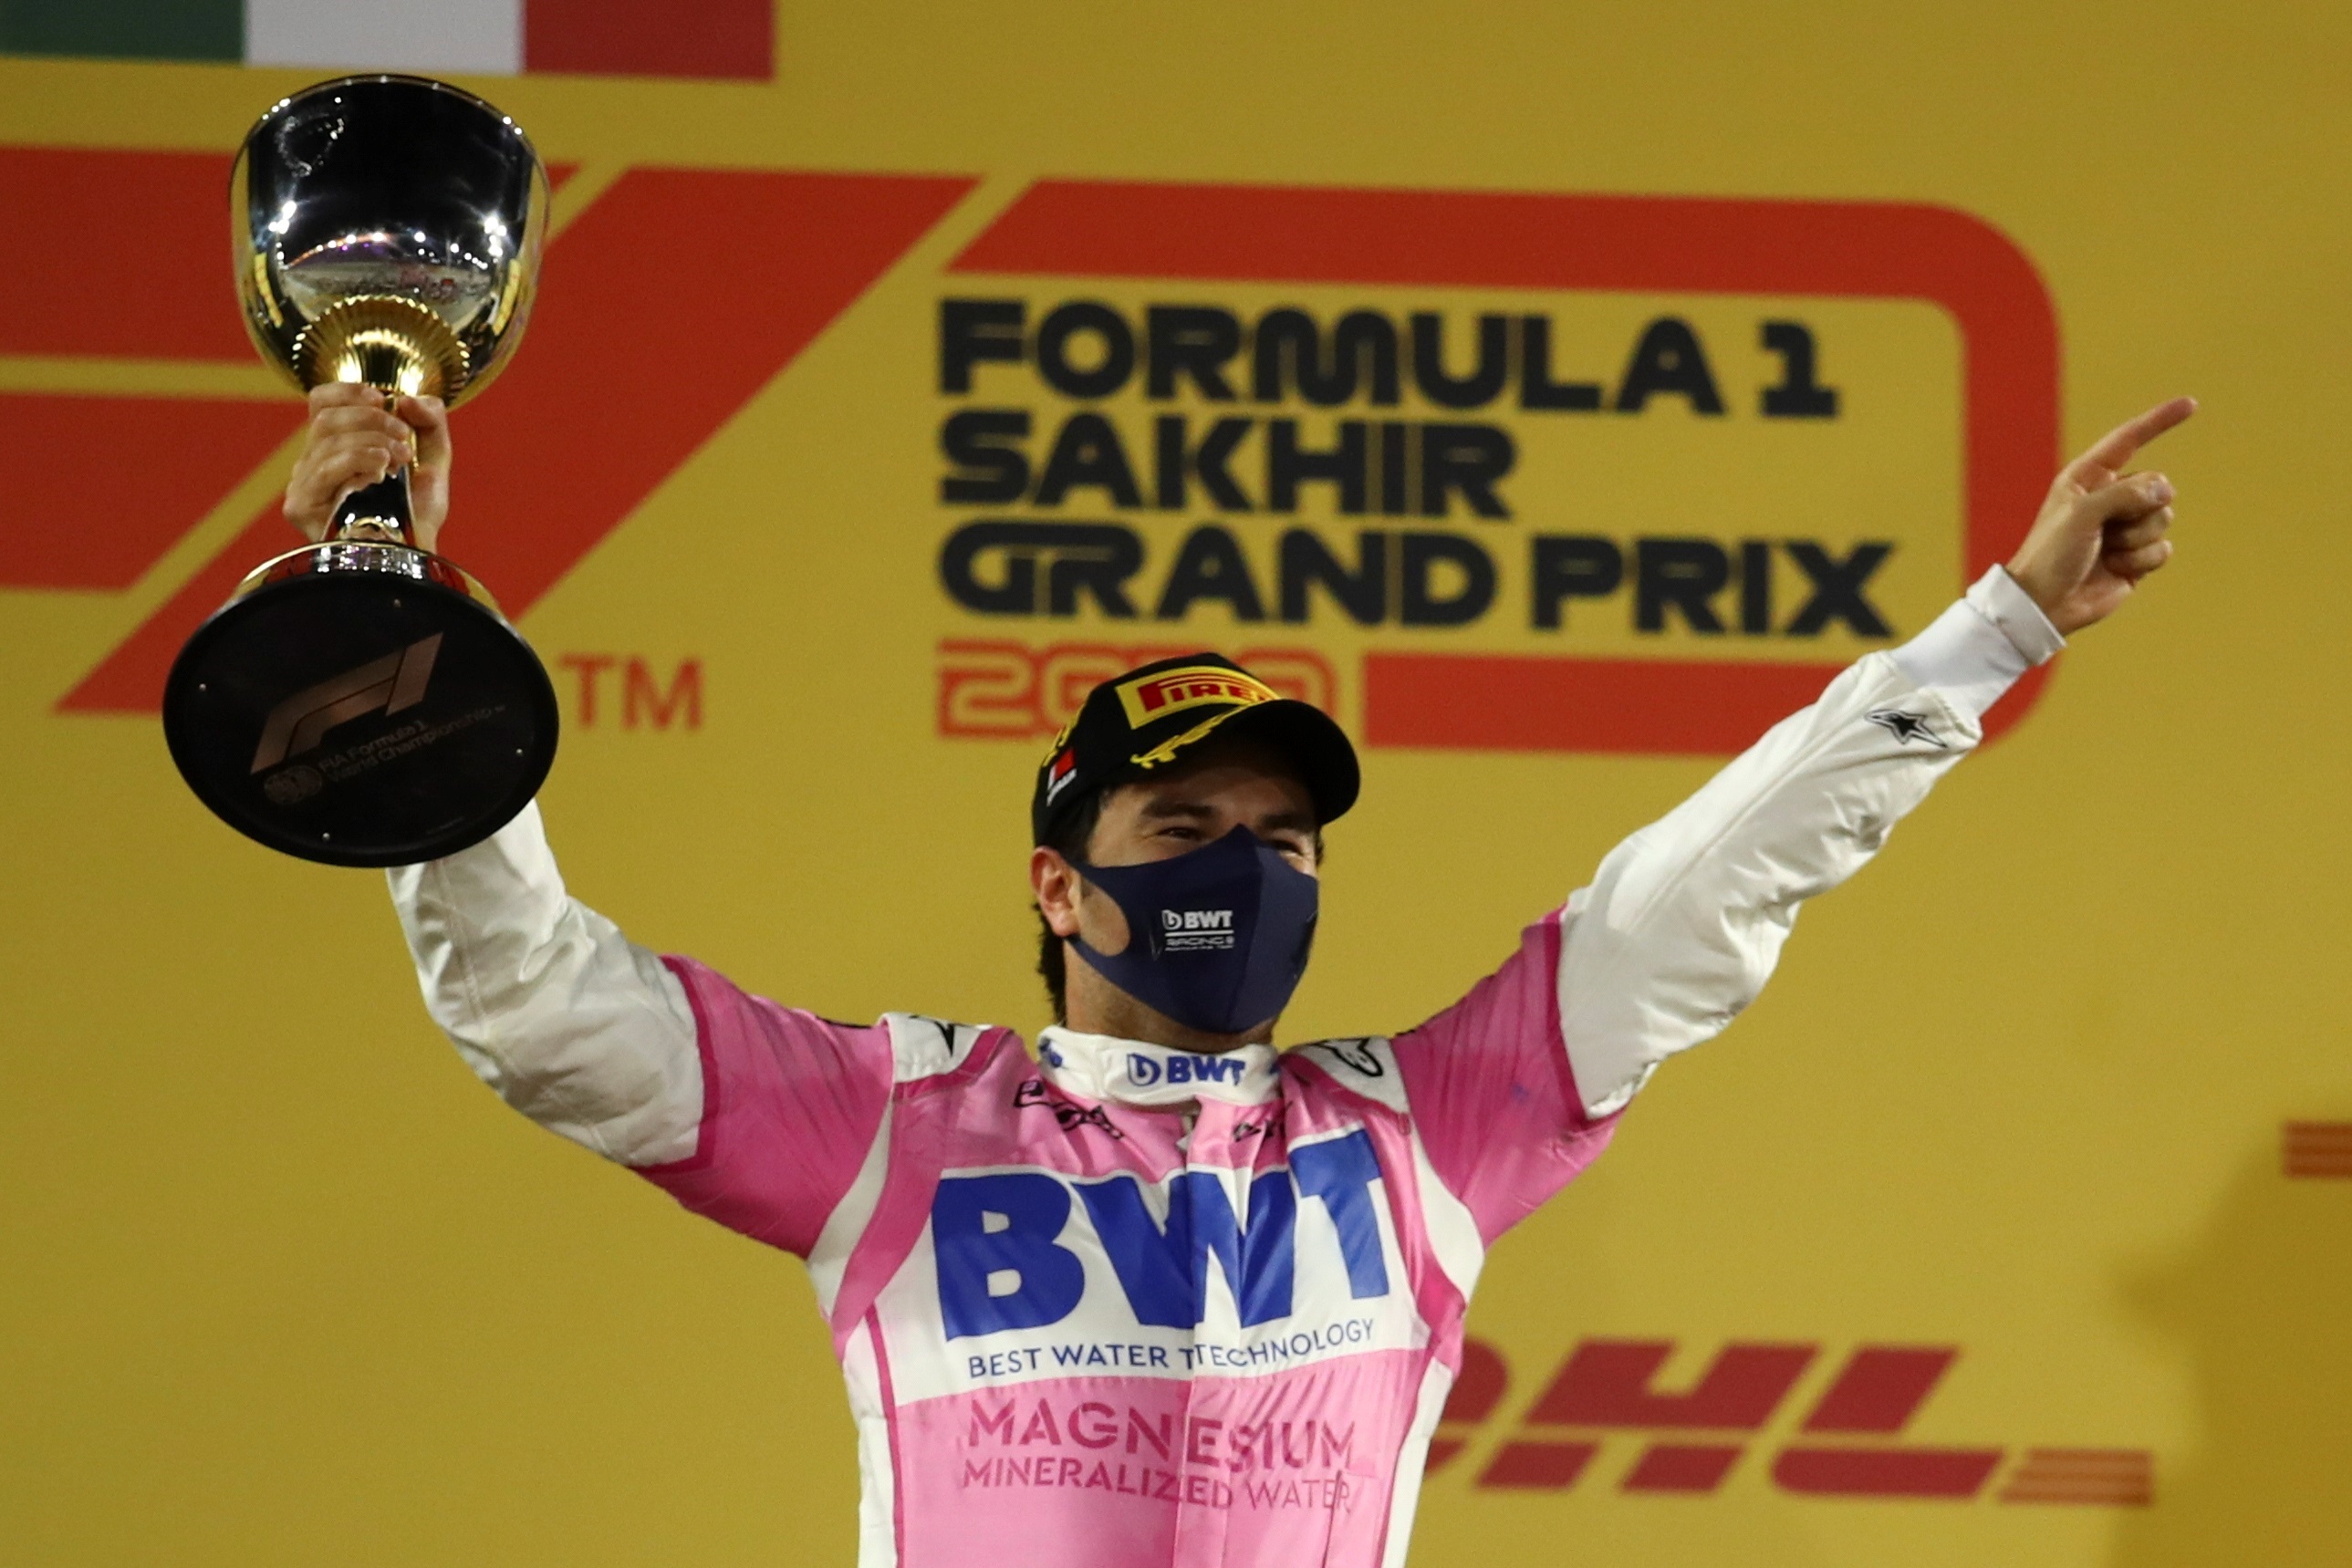 Red Bull anuncia al mexicano Sergio “Checo” Pérez como piloto para la temporada de Fórmula Uno 2021